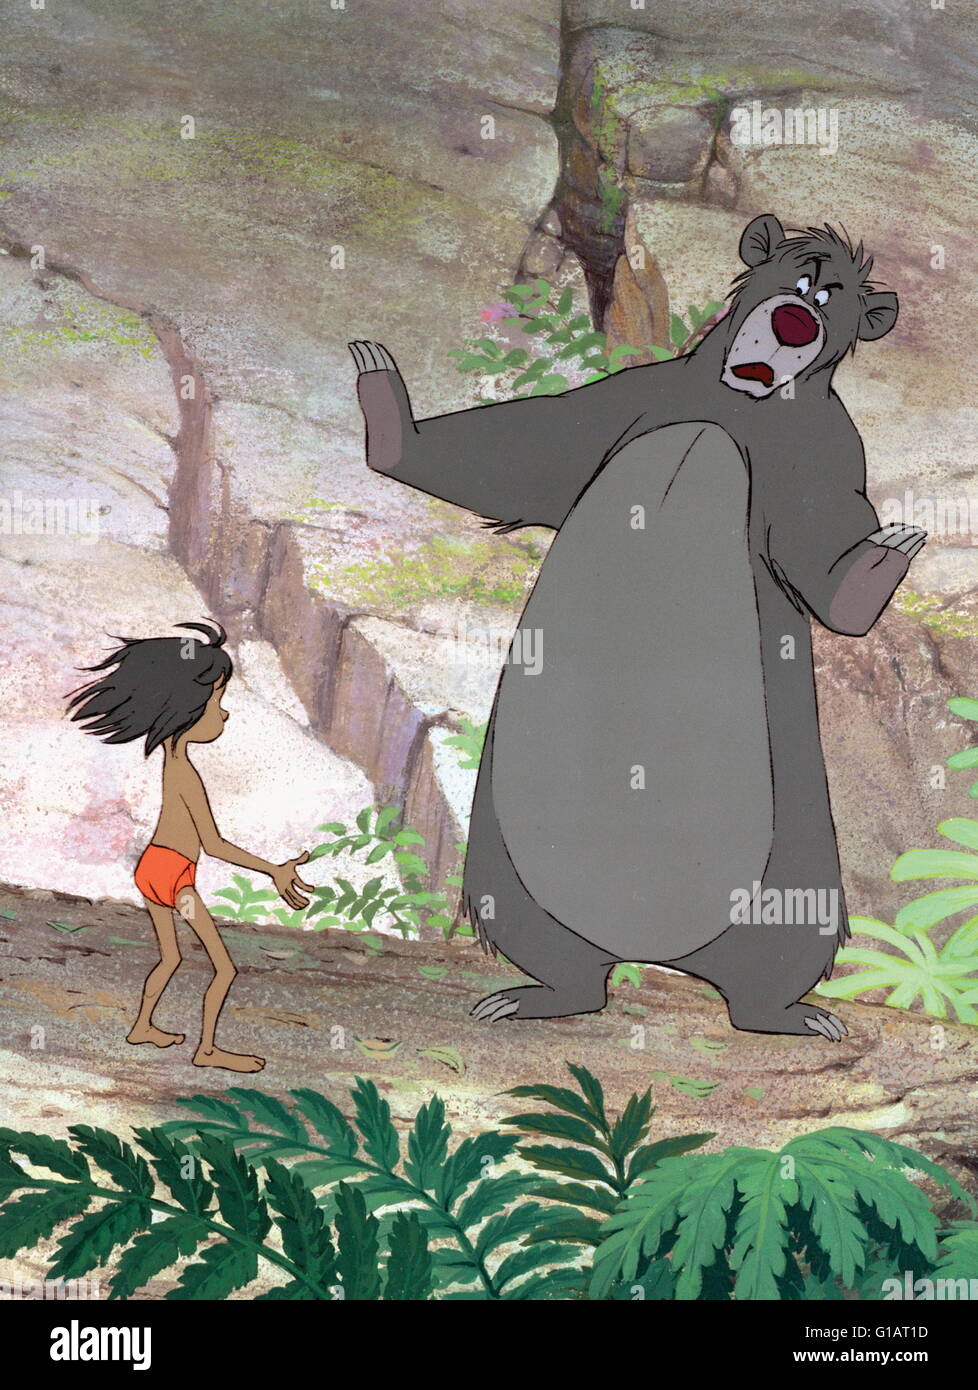 Datum Der Freigabe: 18. Oktober 1967 Direktor: Wolfgang Reitherman Studio: Walt  Disney Productions Plot: Disney Animation Inspiriert Von Rudyard Kiplings  "Mowgli" Geschichte. Mogli Ist Ein Junge, Der Von Wölfen Im Indischen  Dschungel